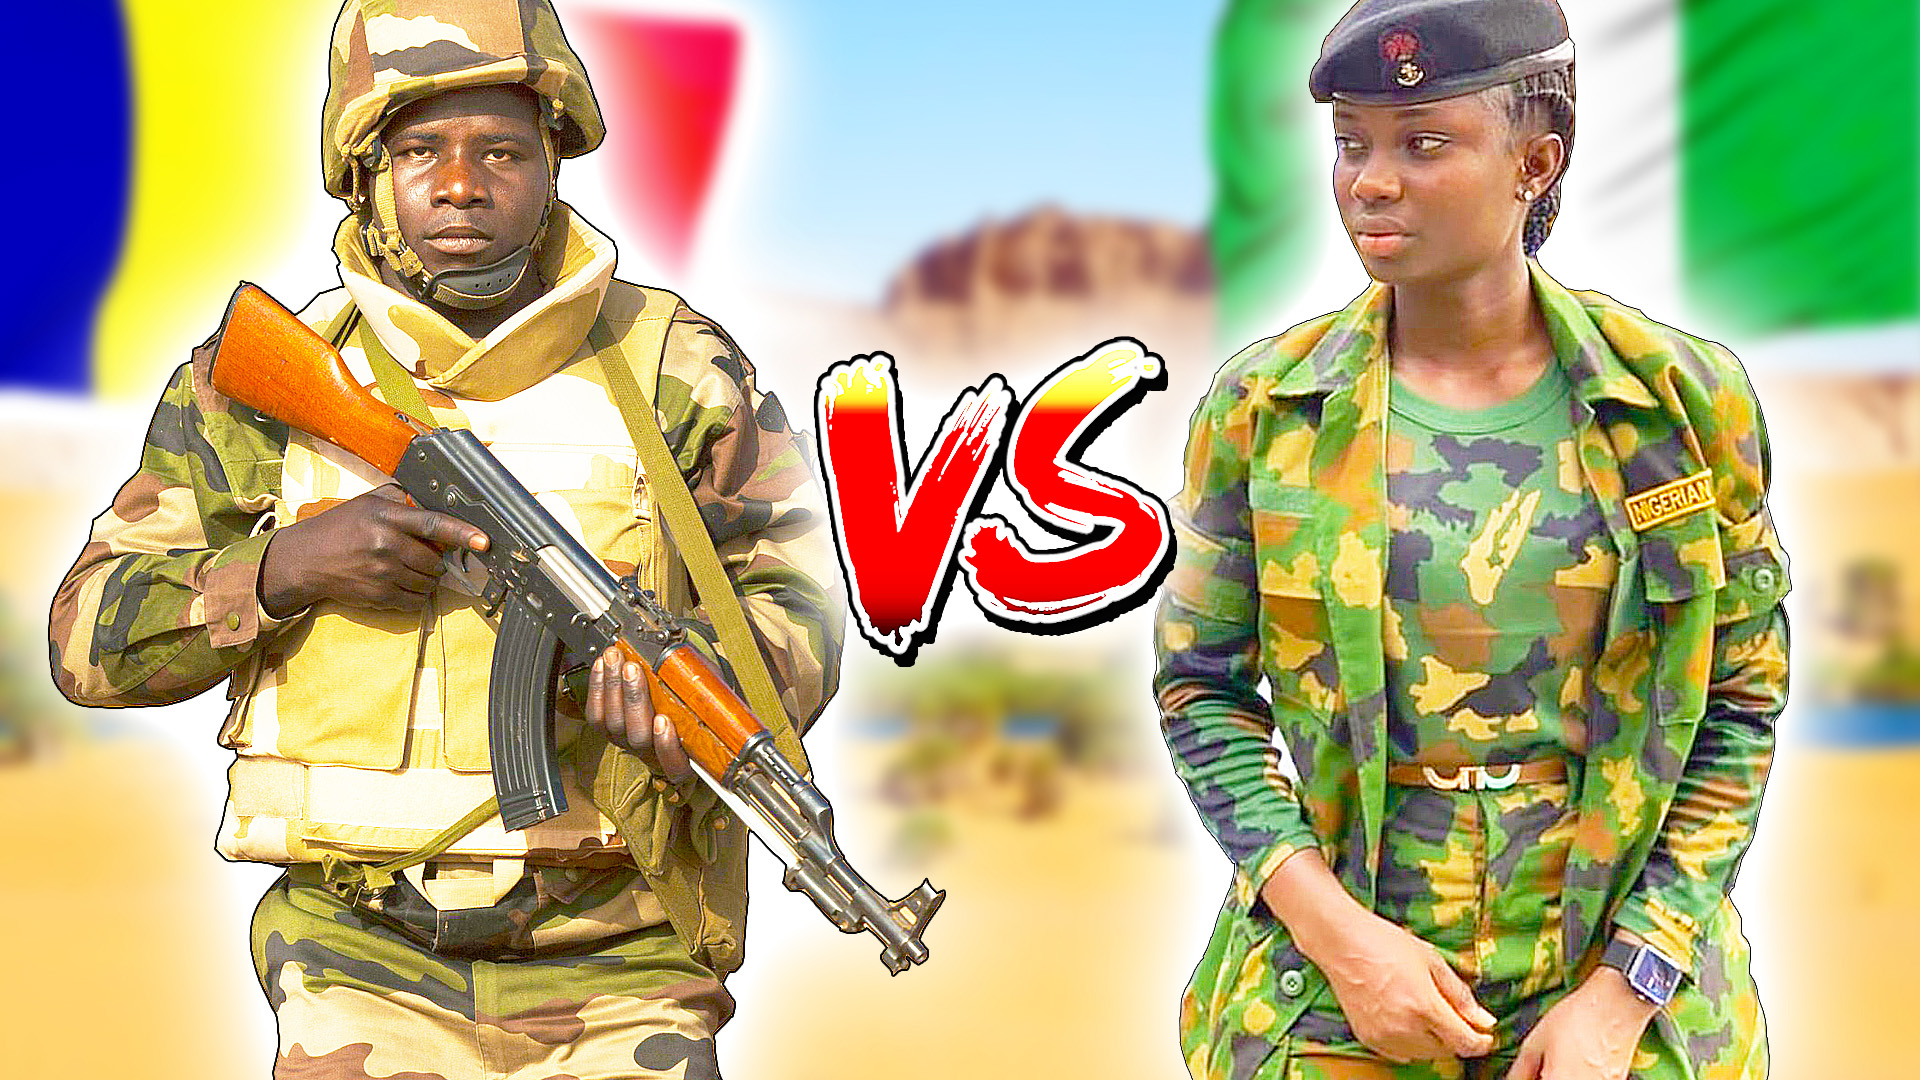 НИГЕРИЯ vs ЧАД ⭐ Кто сильнее? Сравнение армий